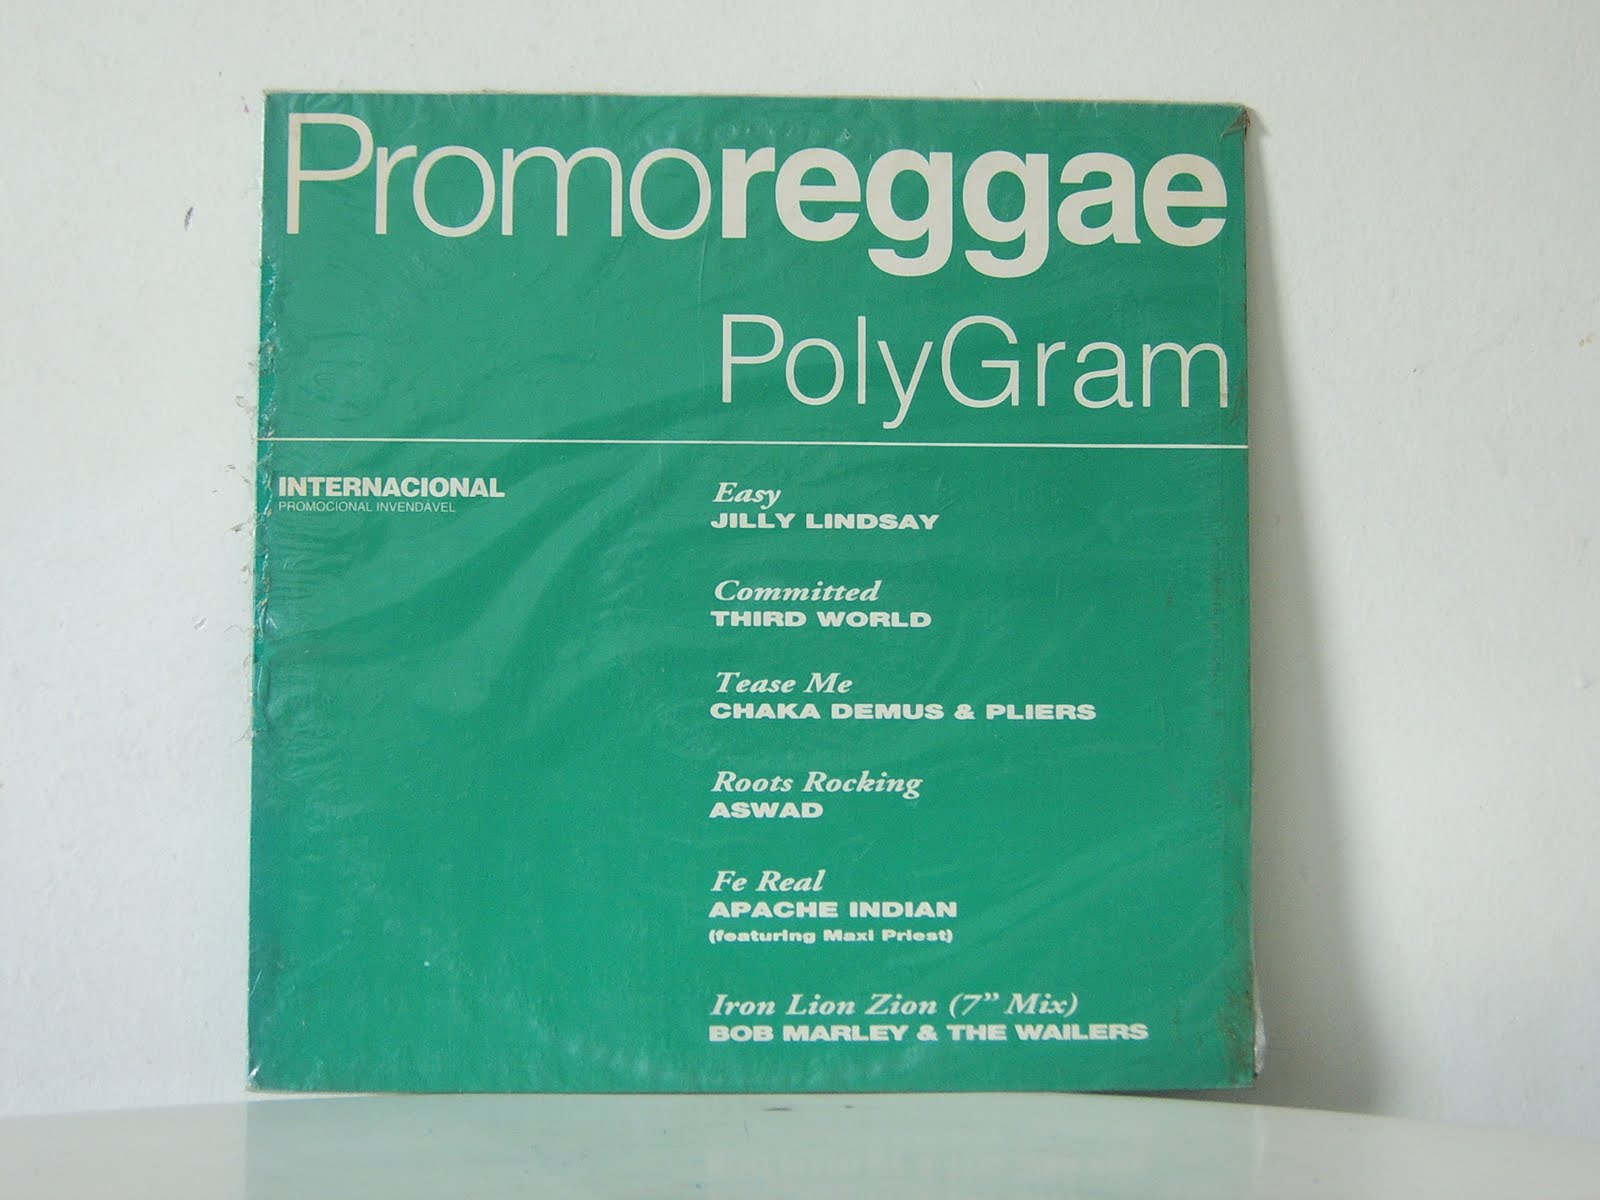 [Promo+Reggae+Polygram.JPG]